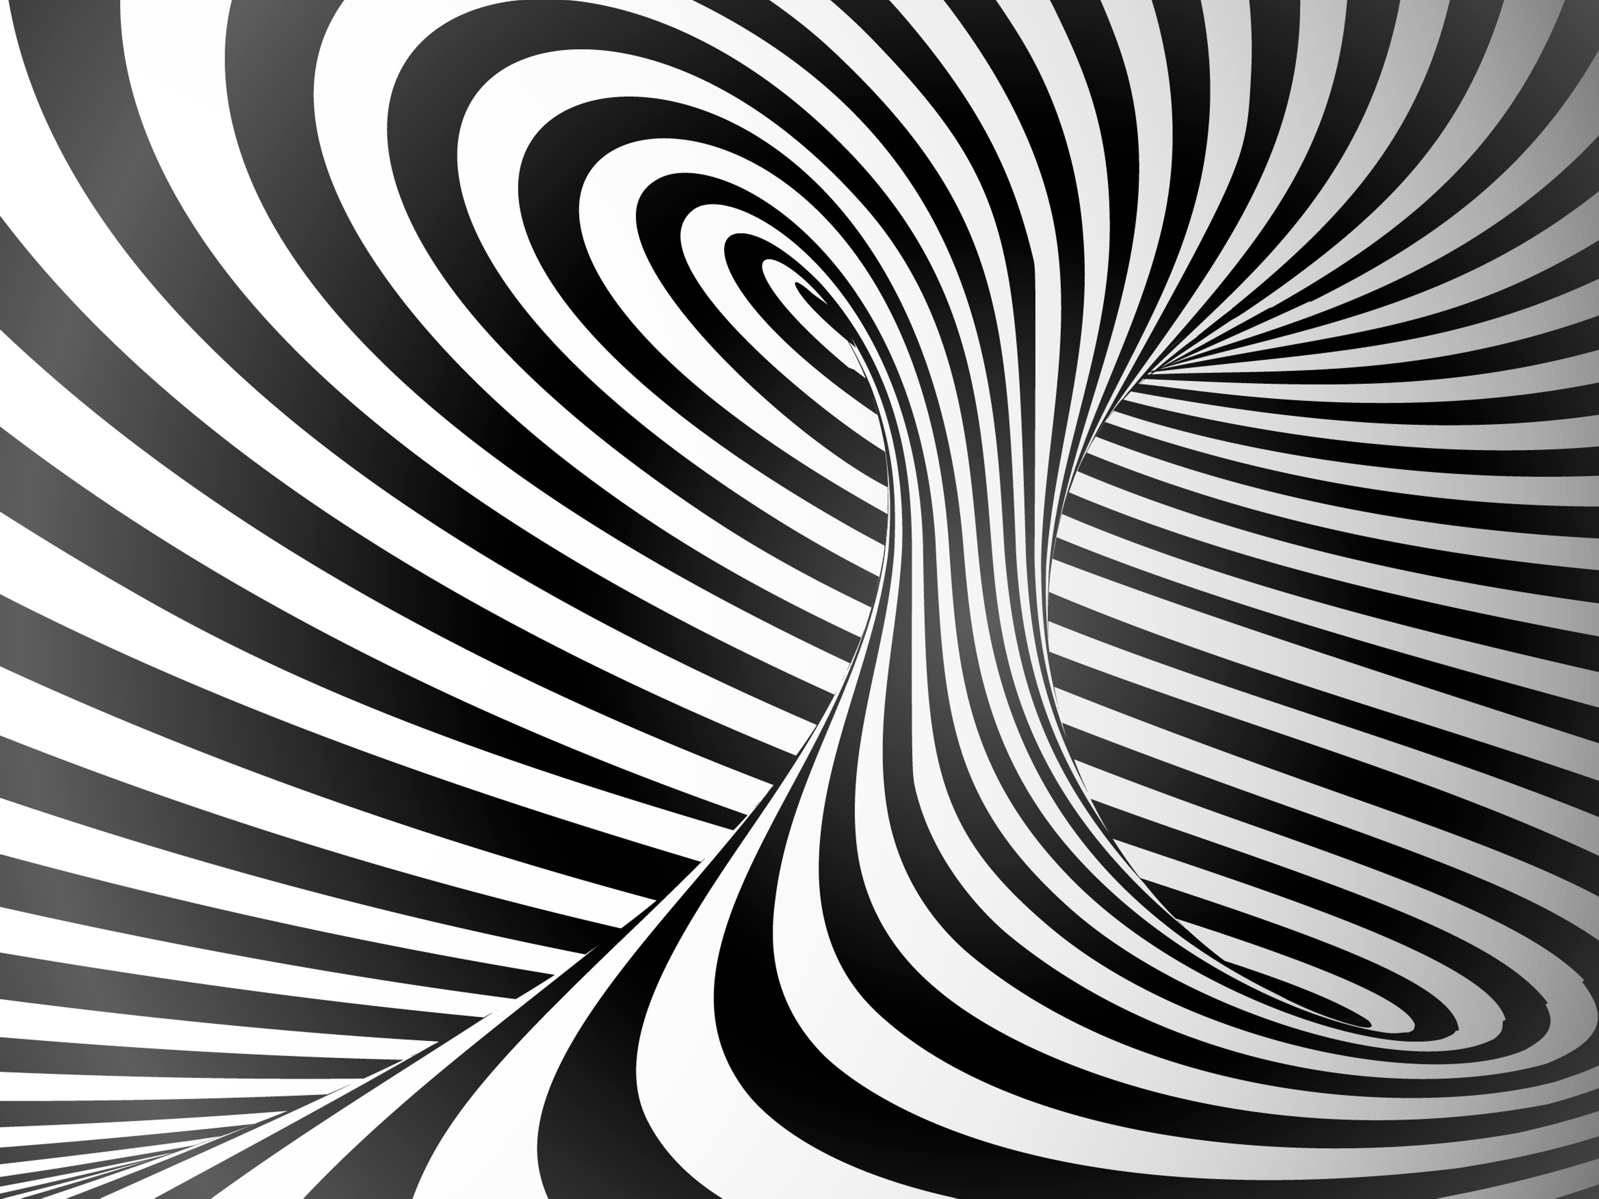 Vlies Tapete Fototapete 3D Effekt Streifen Wirbel Zebra